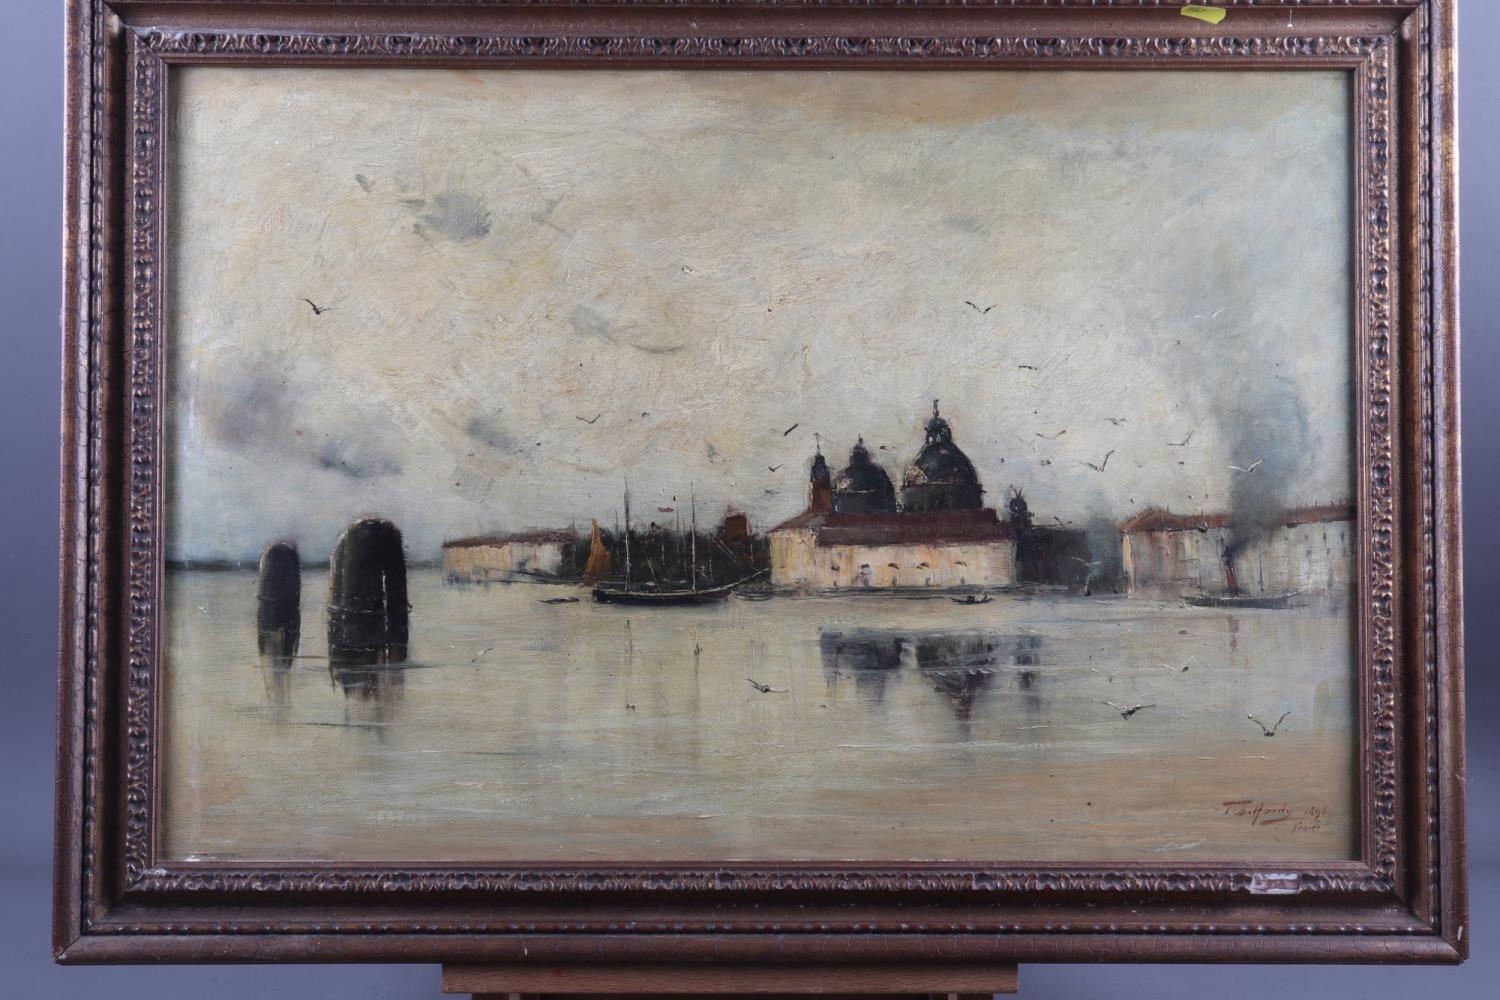 Thomas Bush Hardy, 1896: oil on canvas, "Venice", 17" x 25 1/2", in gilt frame